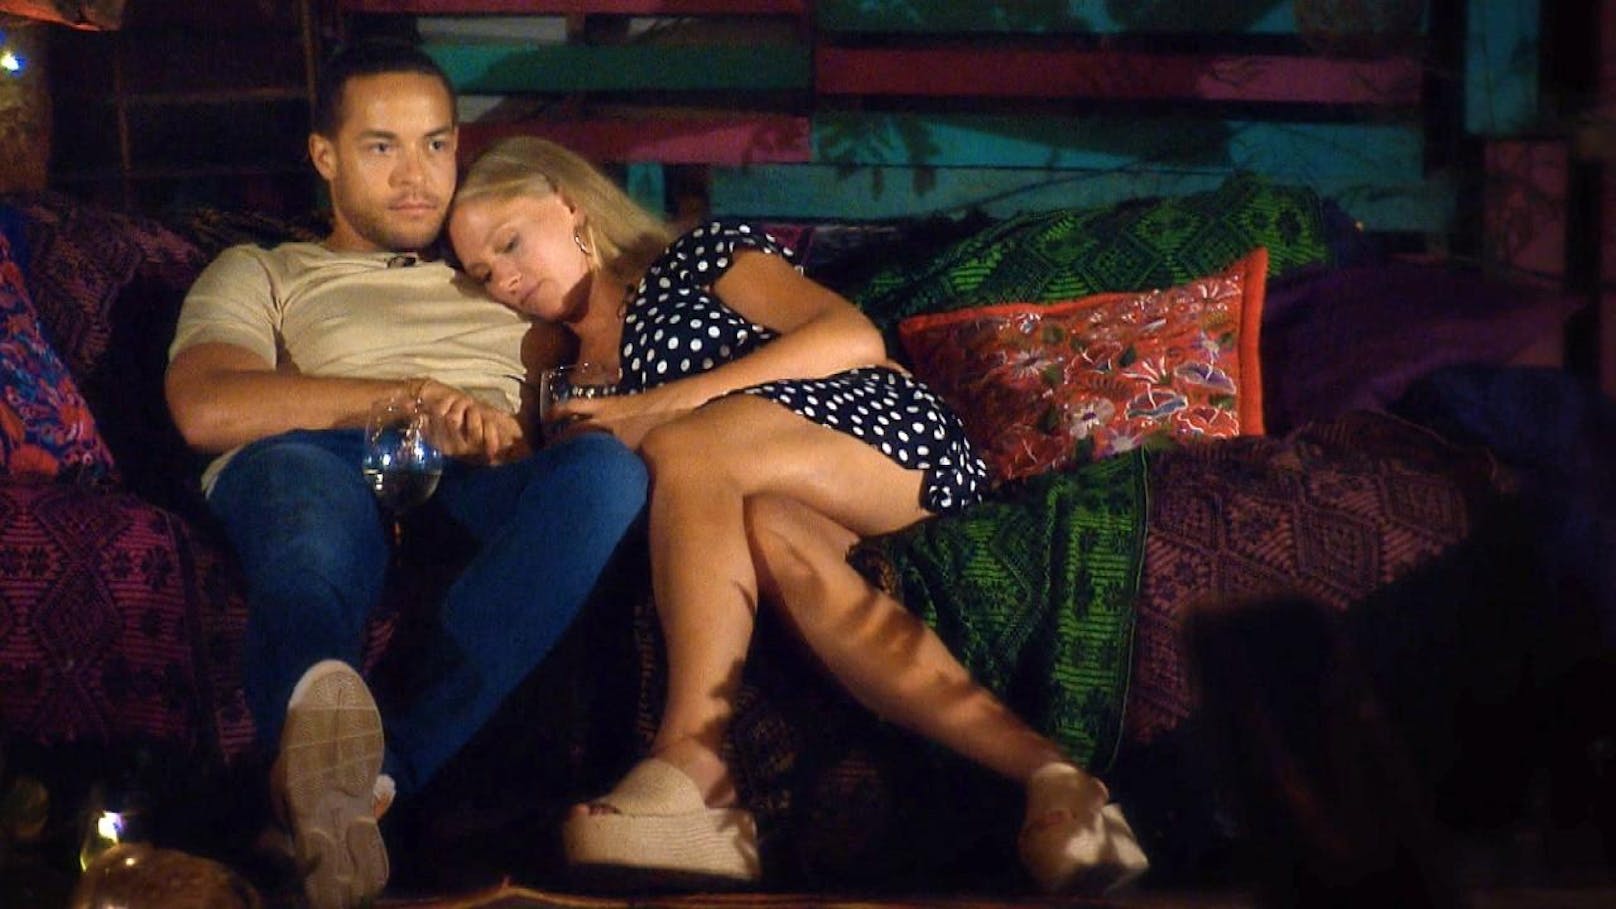 Andrej und Vanessa auf der Couch: Sie will kuscheln und Händchen halten, er sieht nicht gerade begeistert aus